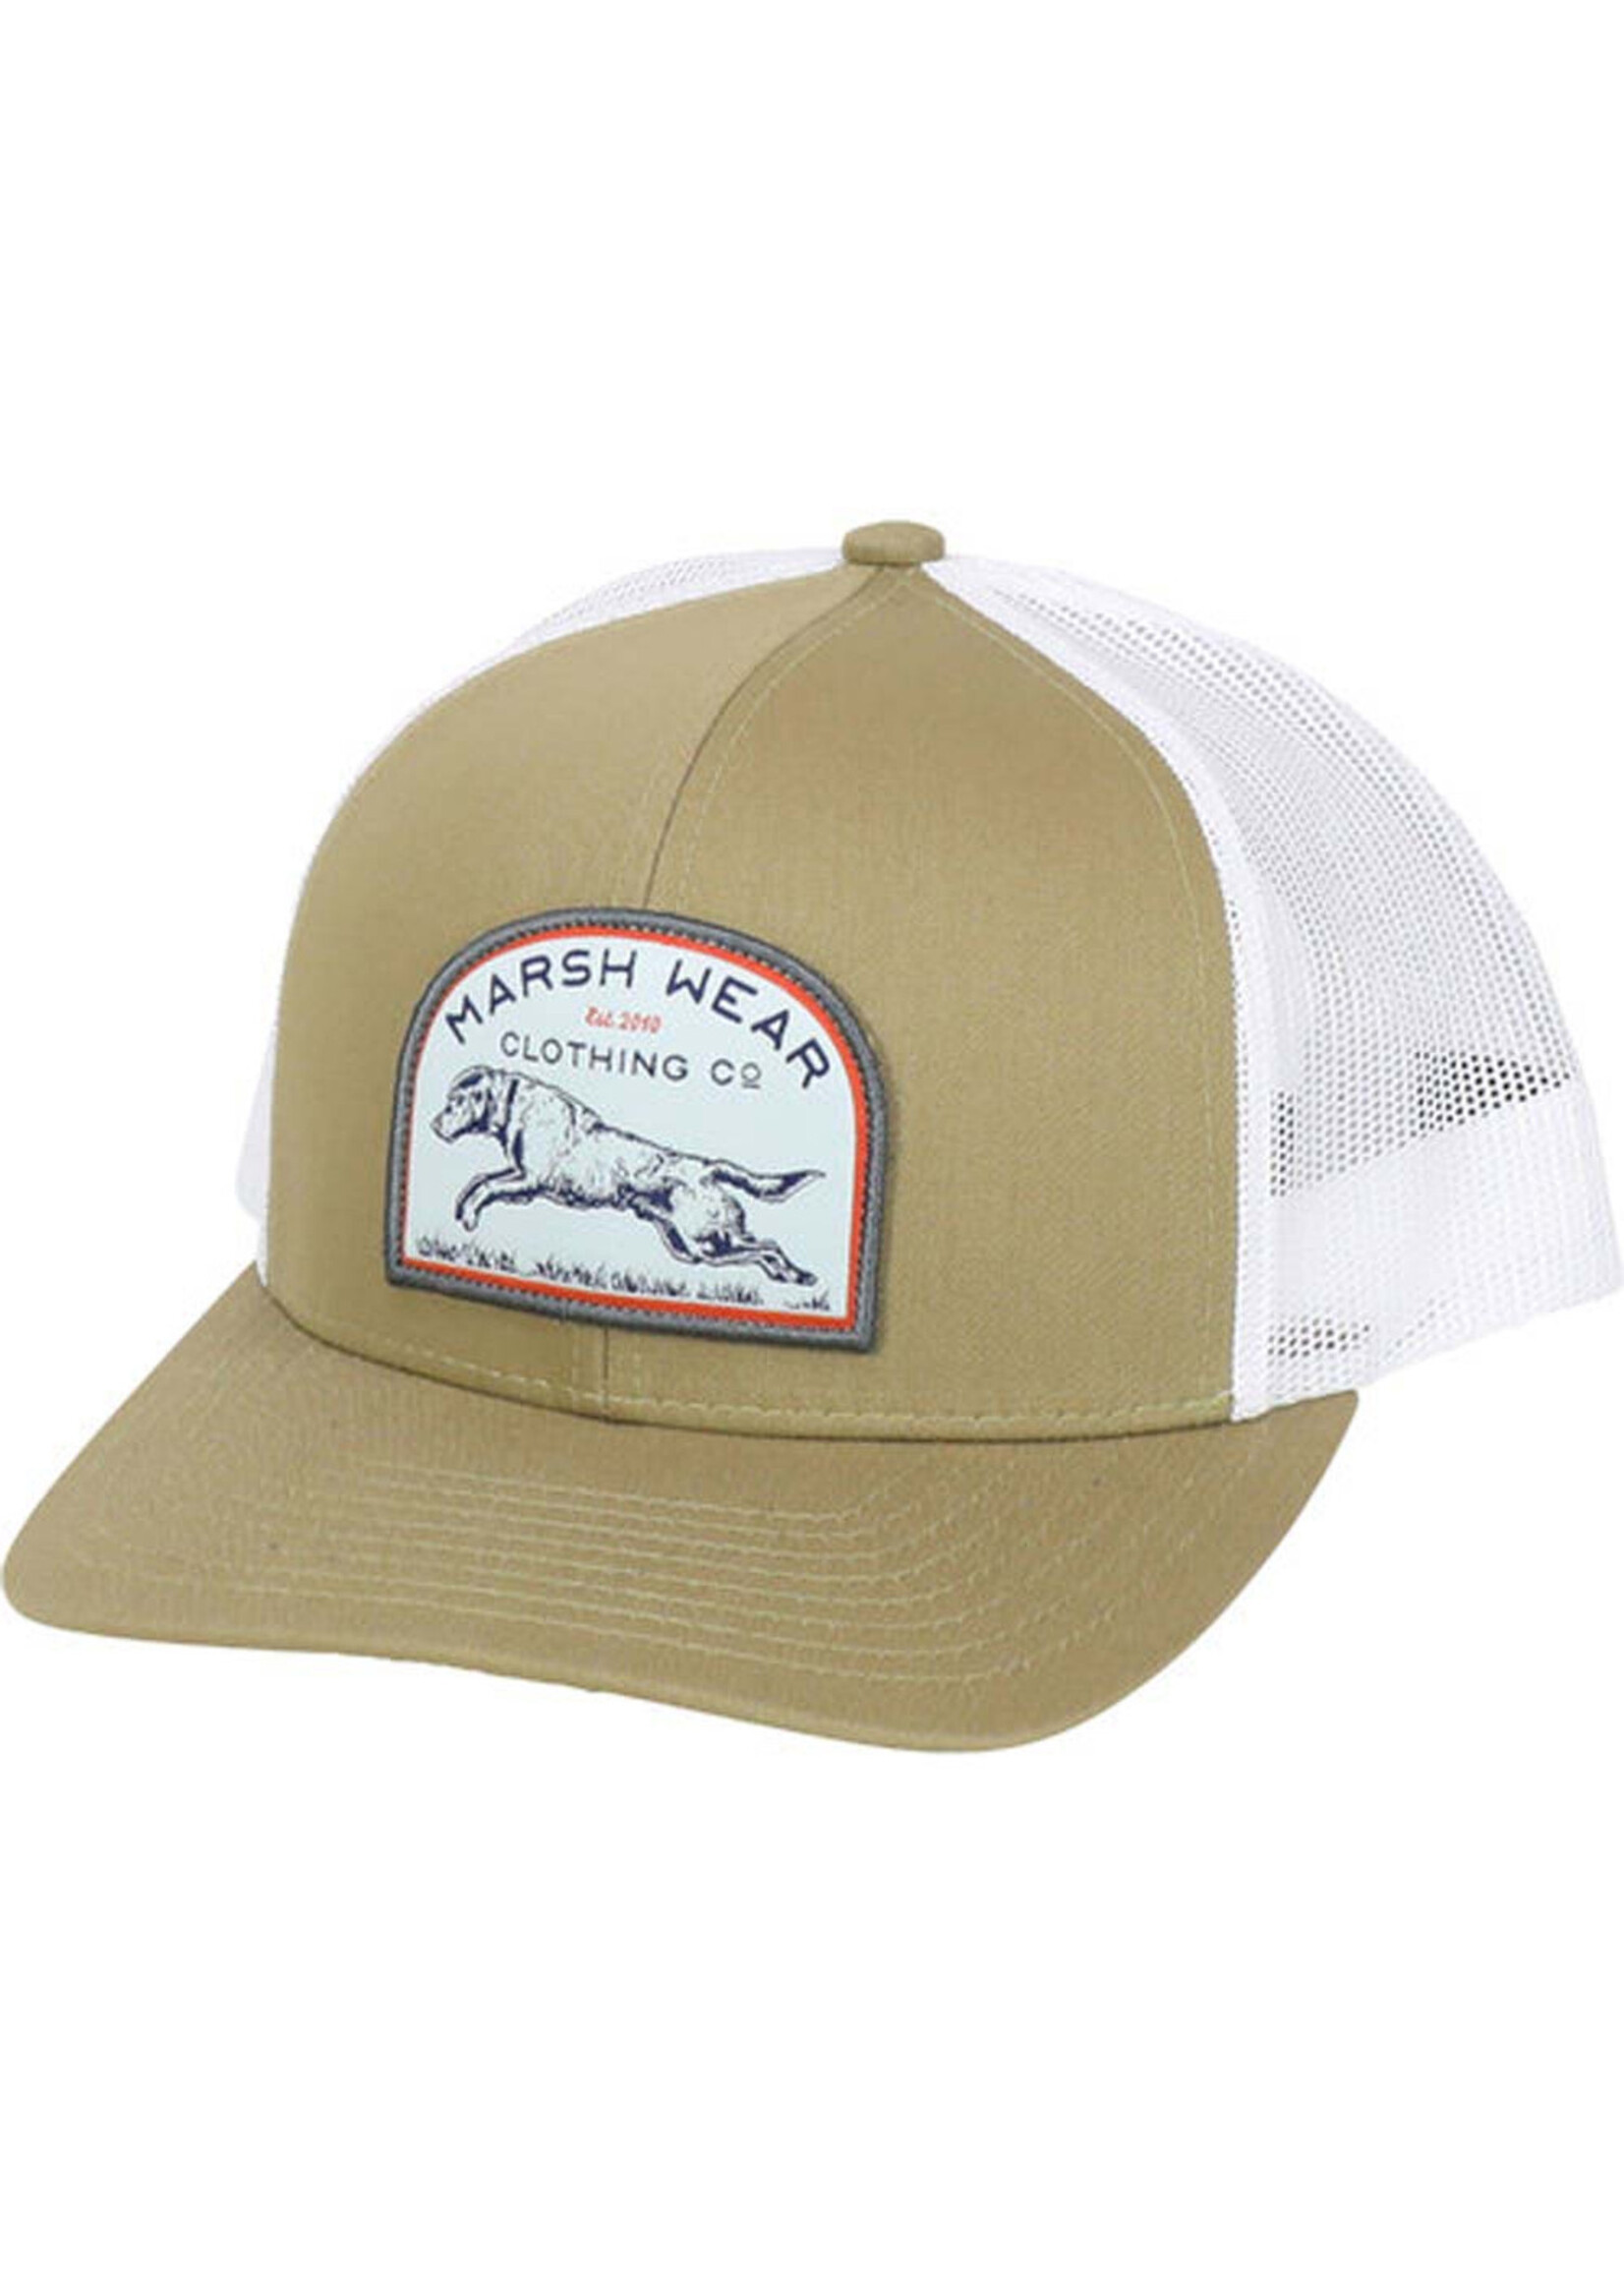 Marsh Wear Marsh Wear Khaki Retrieve Trucker Hat